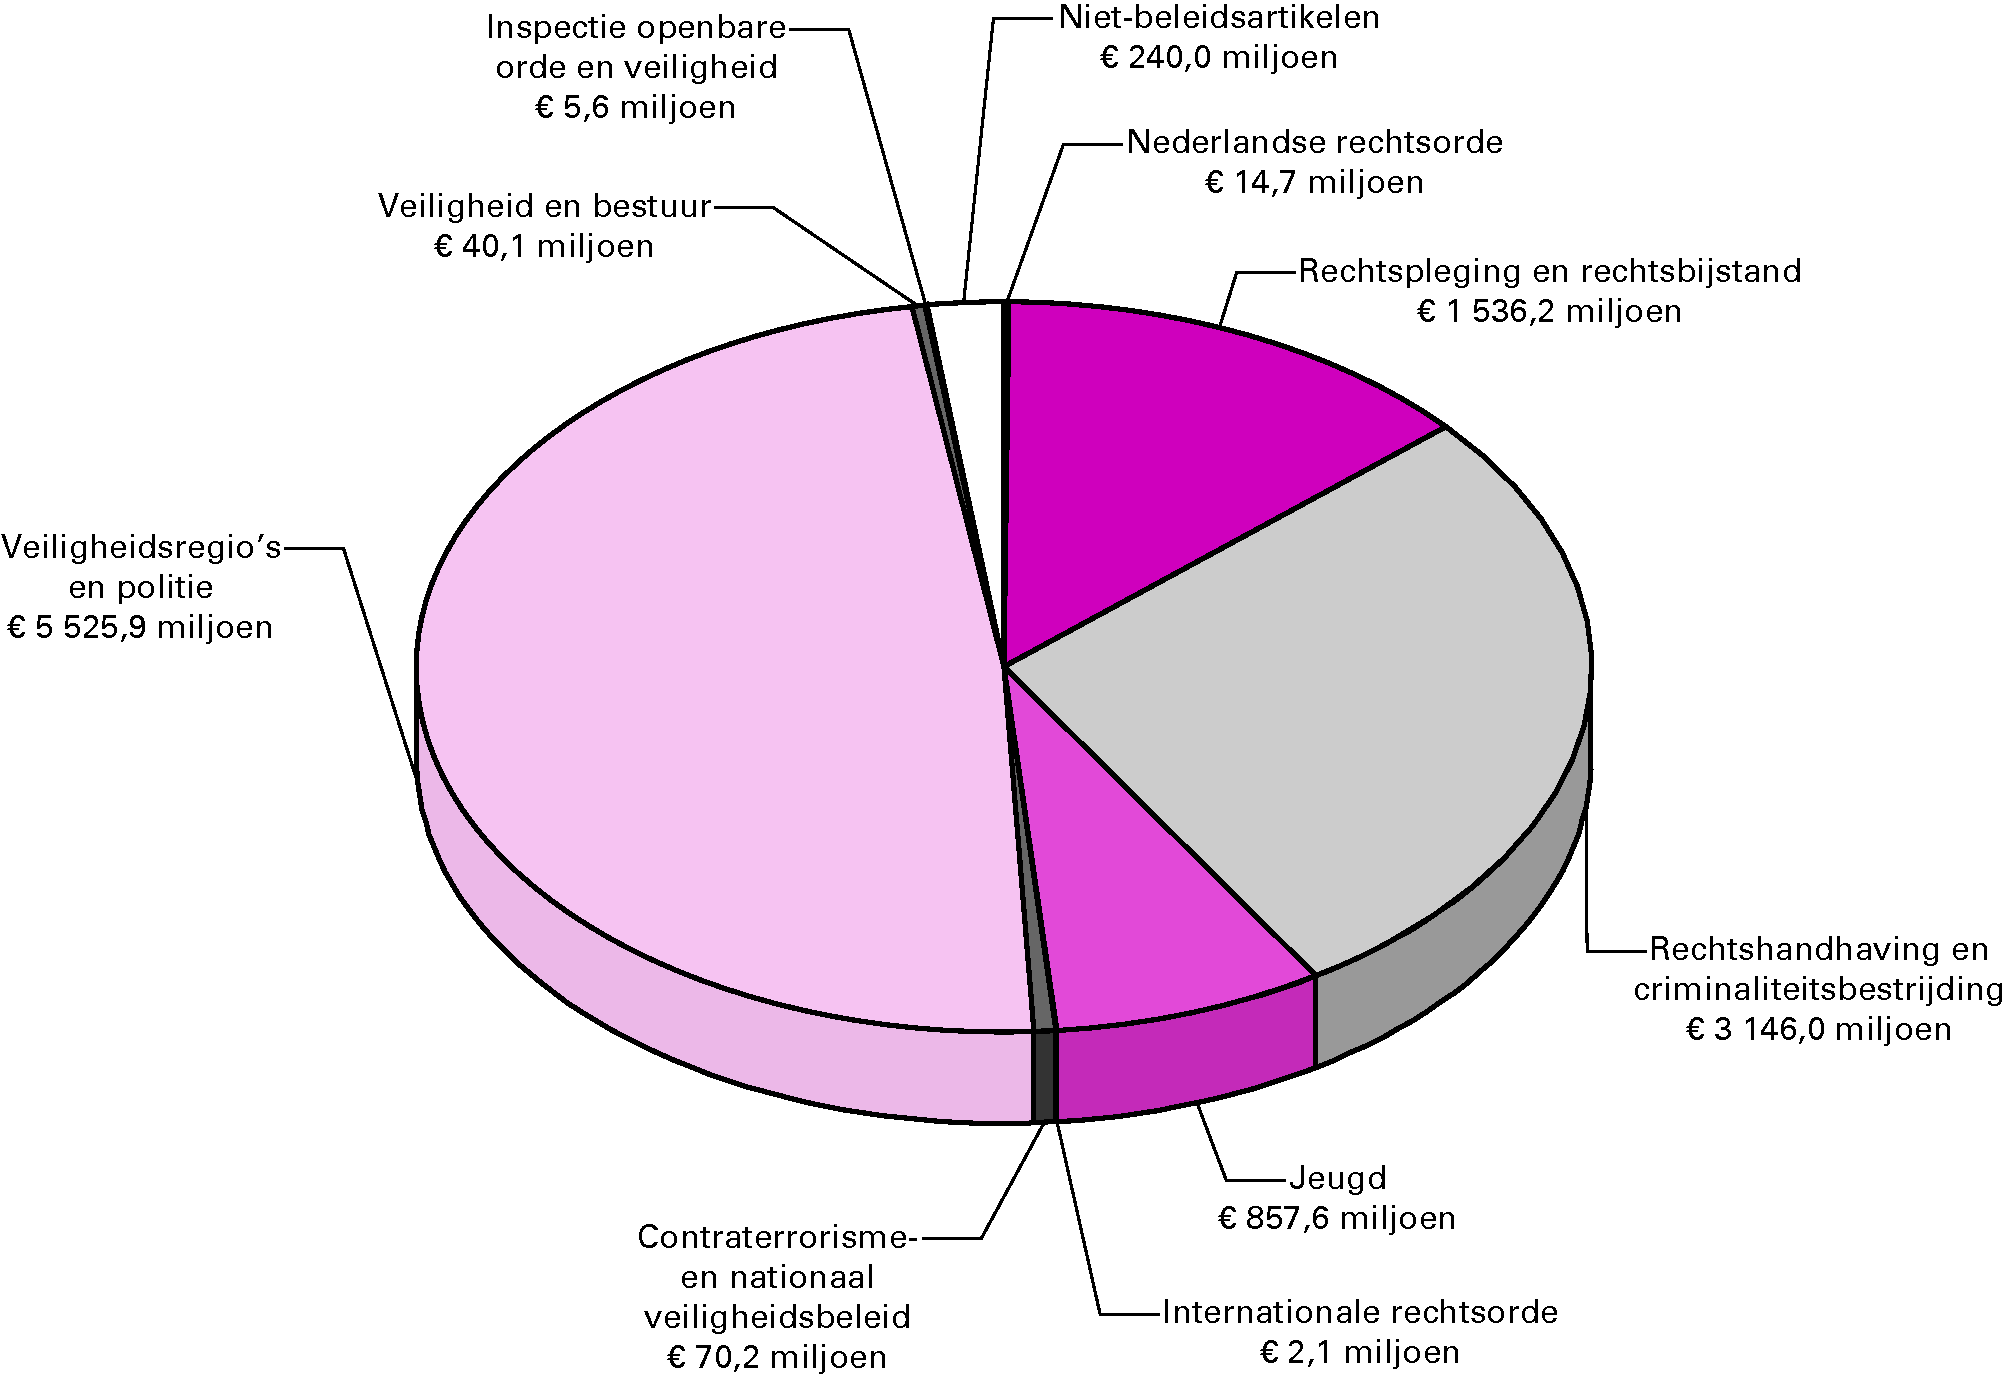 Gerealiseerde uitgaven van het departement 2011 verdeeld over de beleidsartikelen en niet-beleidsartikelenGerealiseerde uitgaven 2011 totaal € 11 438,5 miljoen